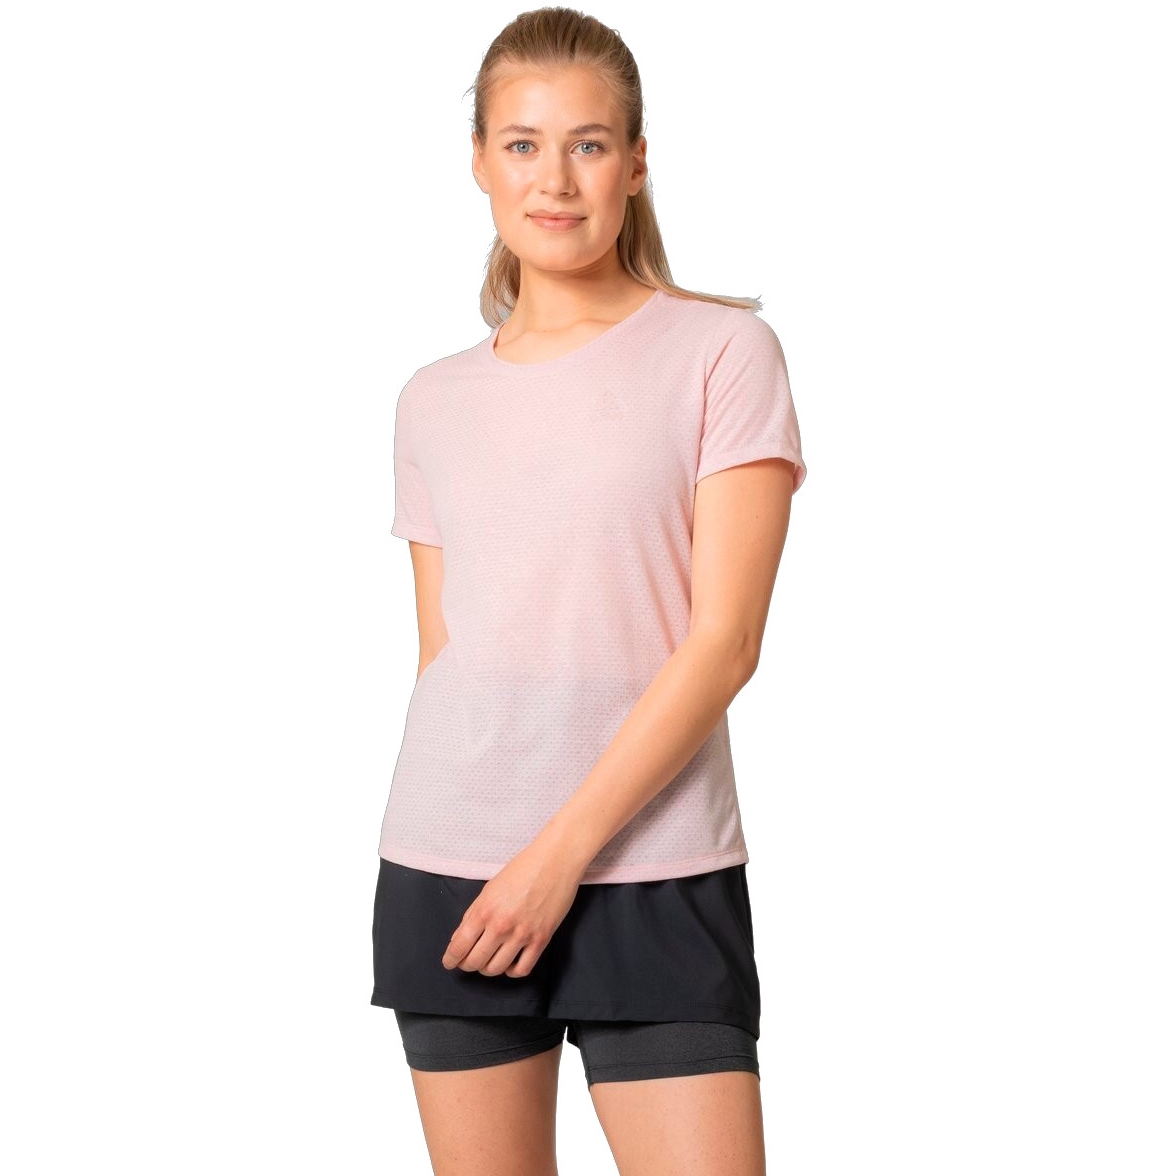 Produktbild von Odlo Active 365 Linencool T-Shirt Damen - pale mauve melange